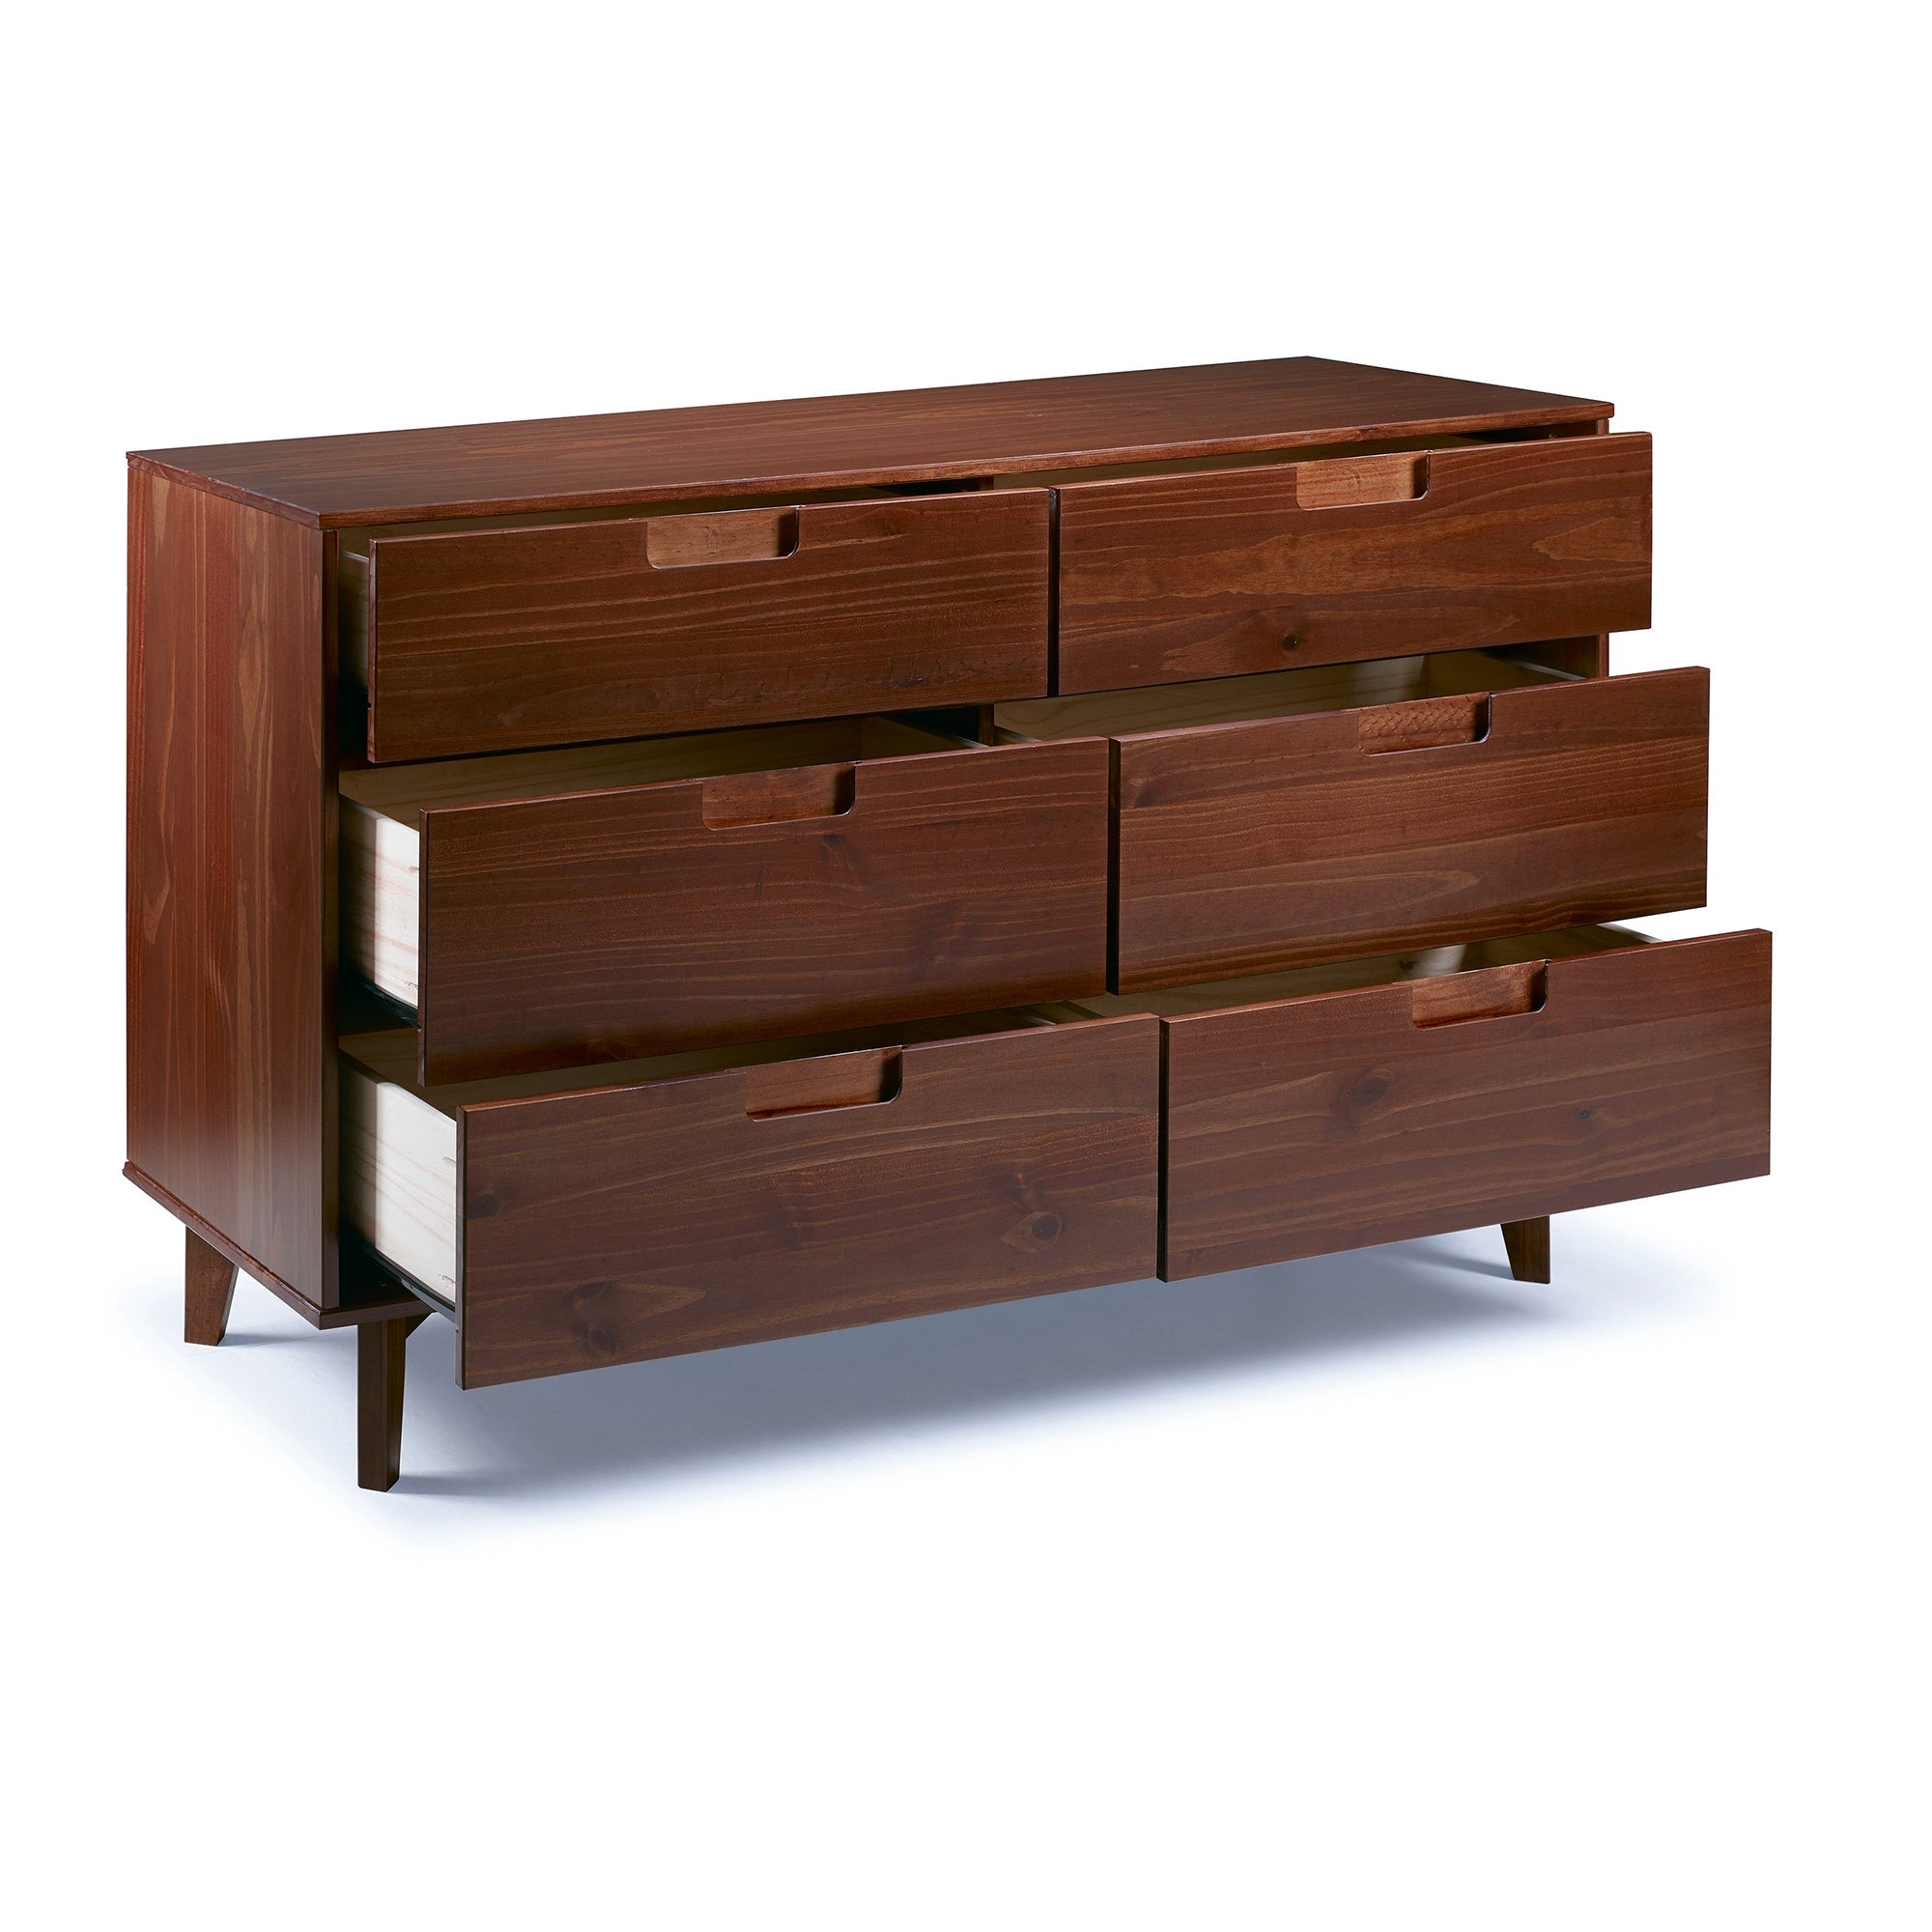 Sloane 6 Drawer Groove Handle Wood Dresser - East Shore Modern Home Furnishings